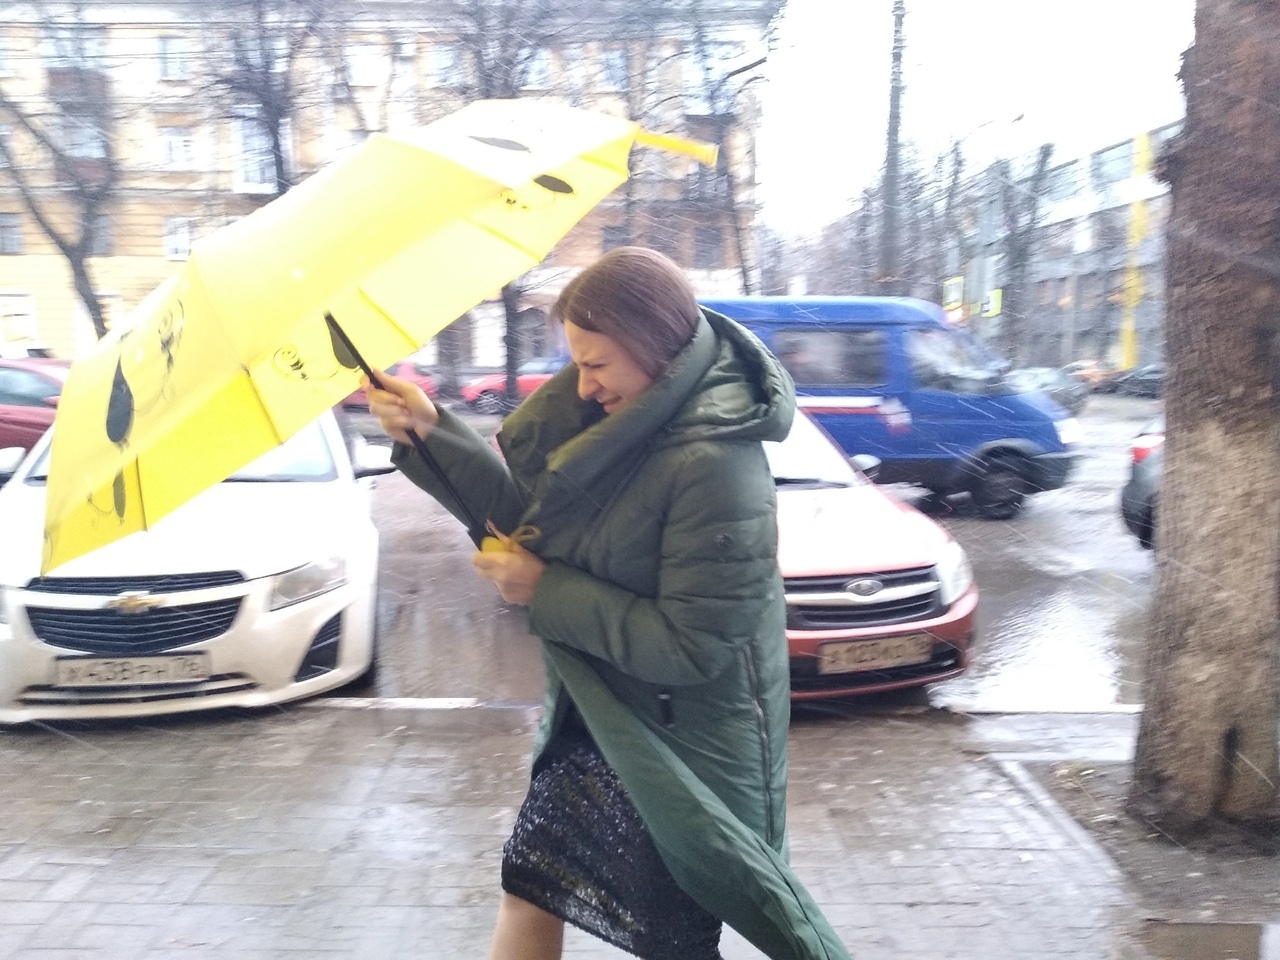   МЧС выпустило экстренное предупреждение о длительной грозе и шторме в Ярославле